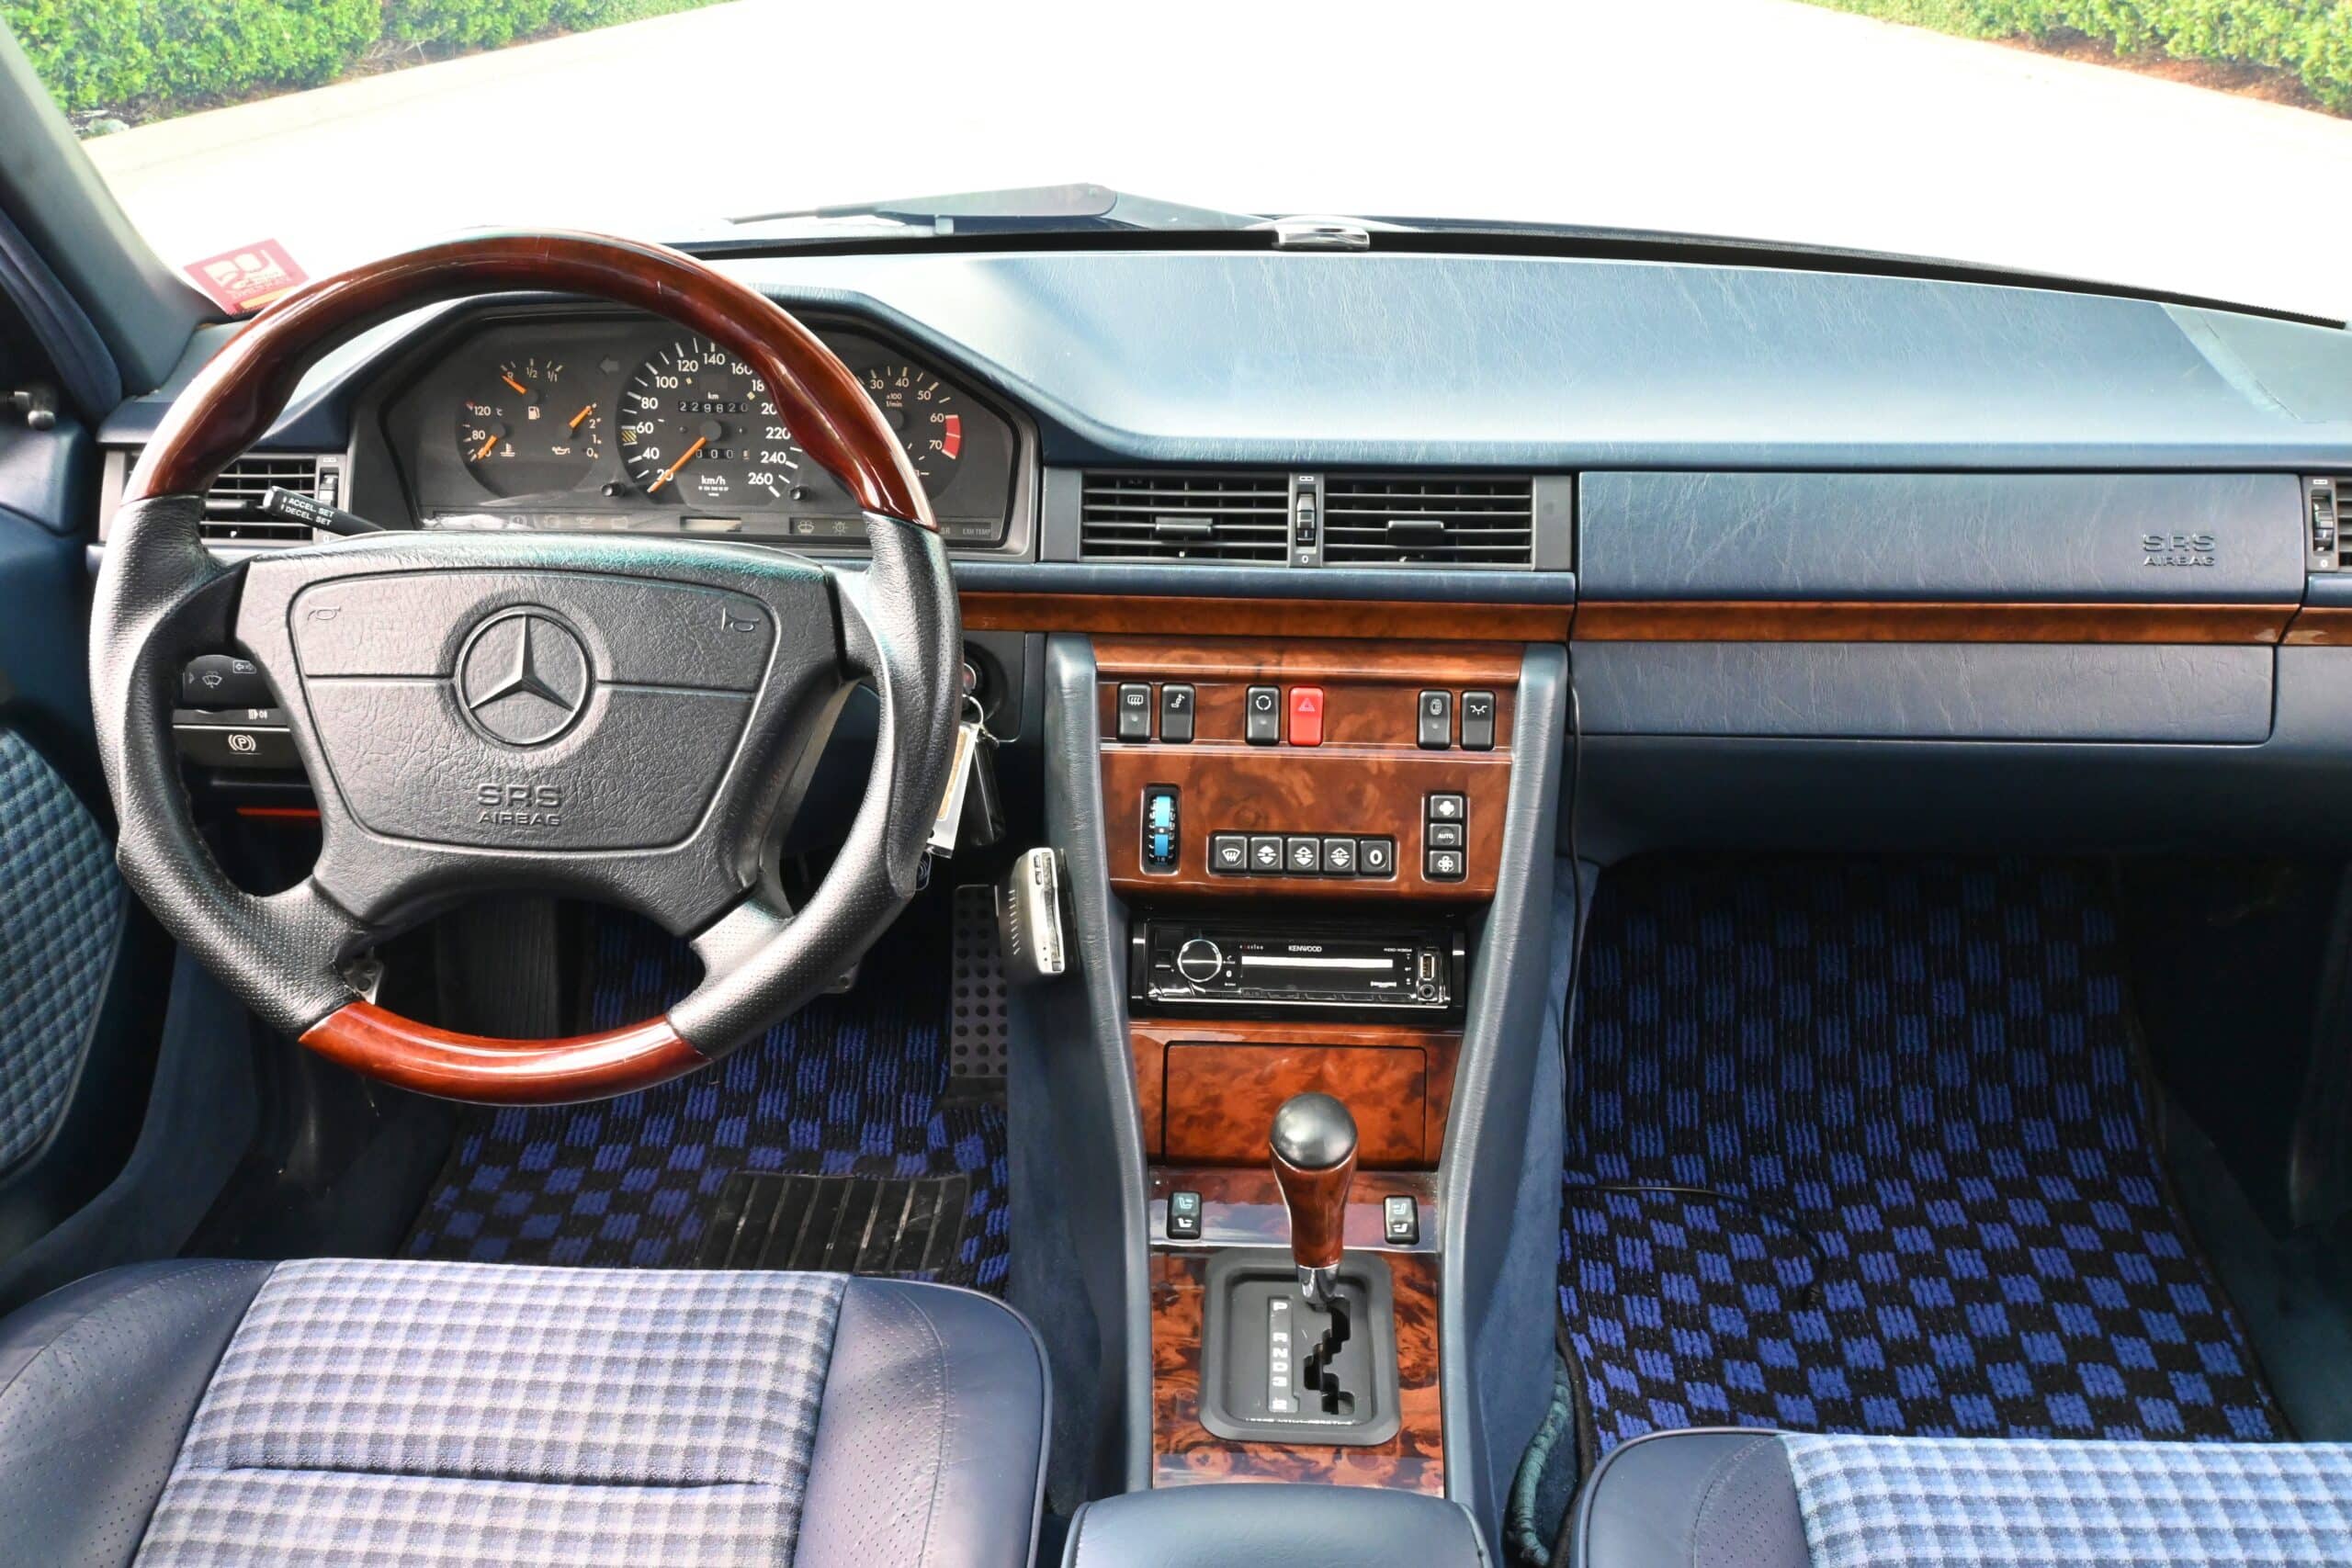 1992 Mercedes-Benz E-Class 500E Euro W-124 Widebody / Extremely rare interior / OZ Opera wheels / Recent Service